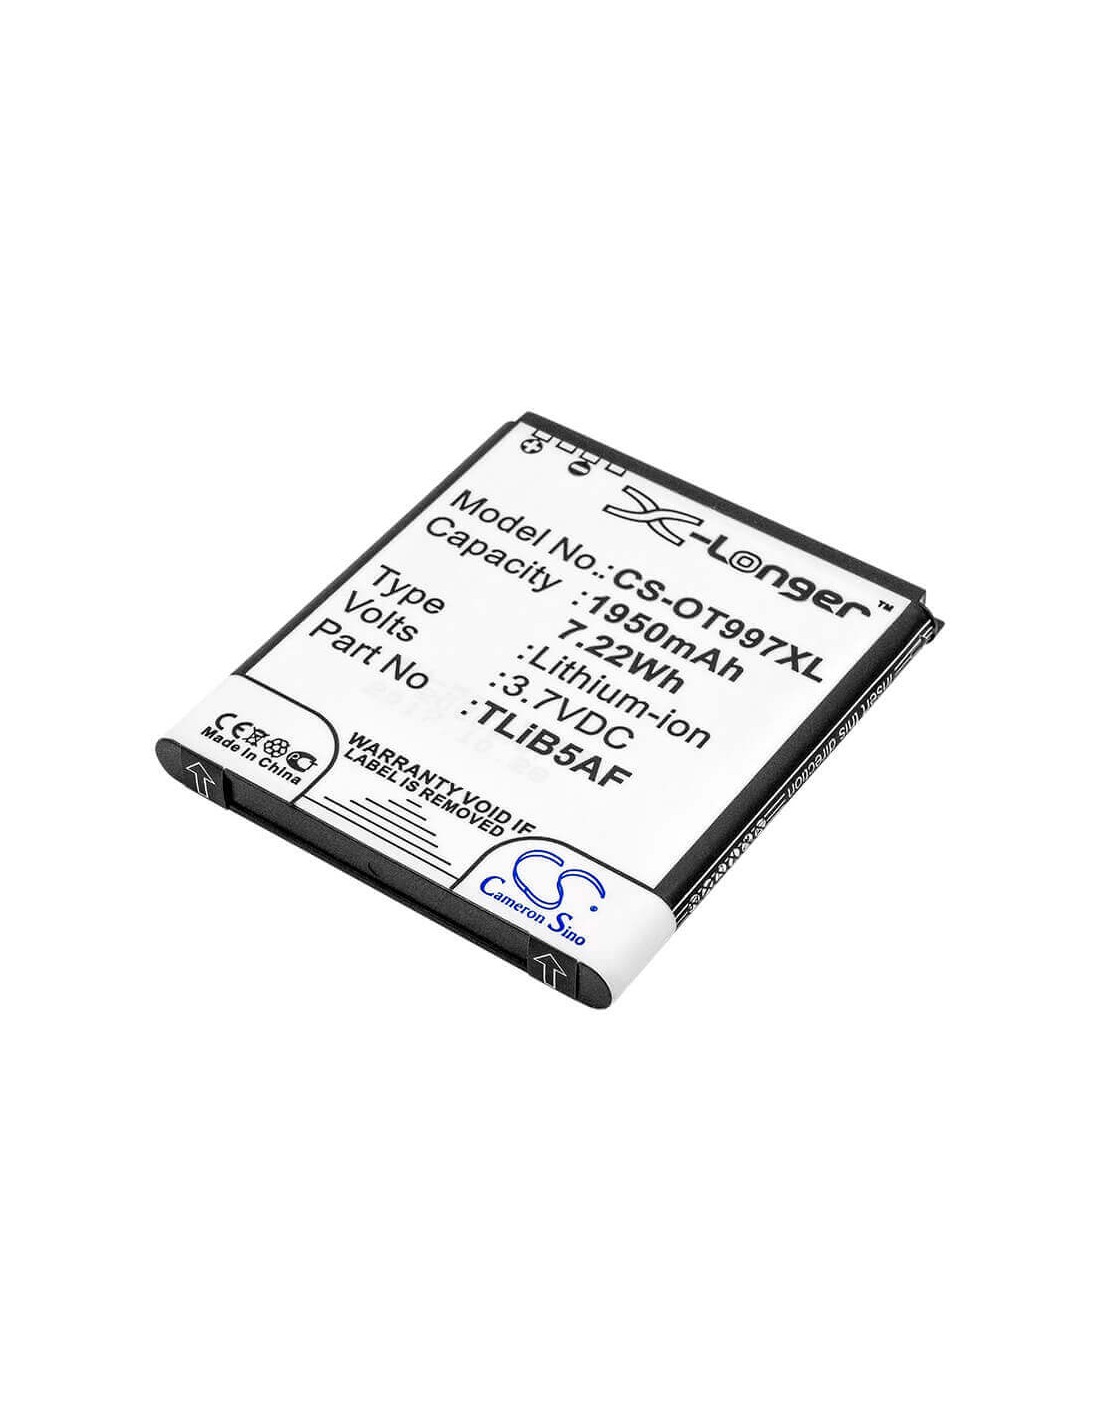 Battery for Alcatel OT-997, OT-997D, One Touch 997 3.7V, 1950mAh - 7.22Wh